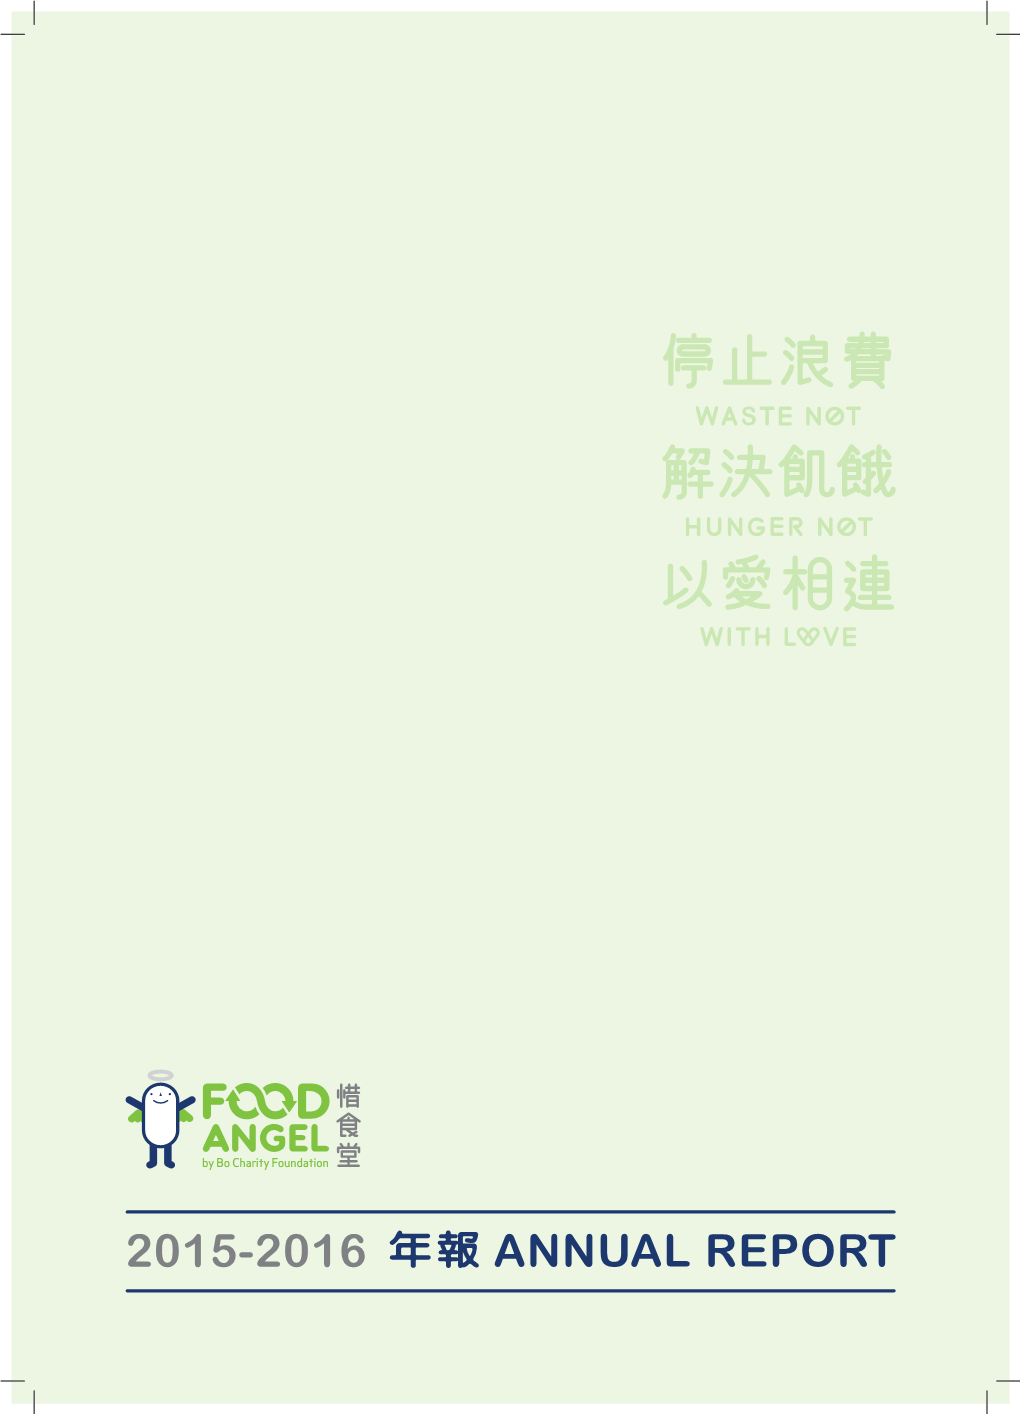 2015-2016 年報annual Report